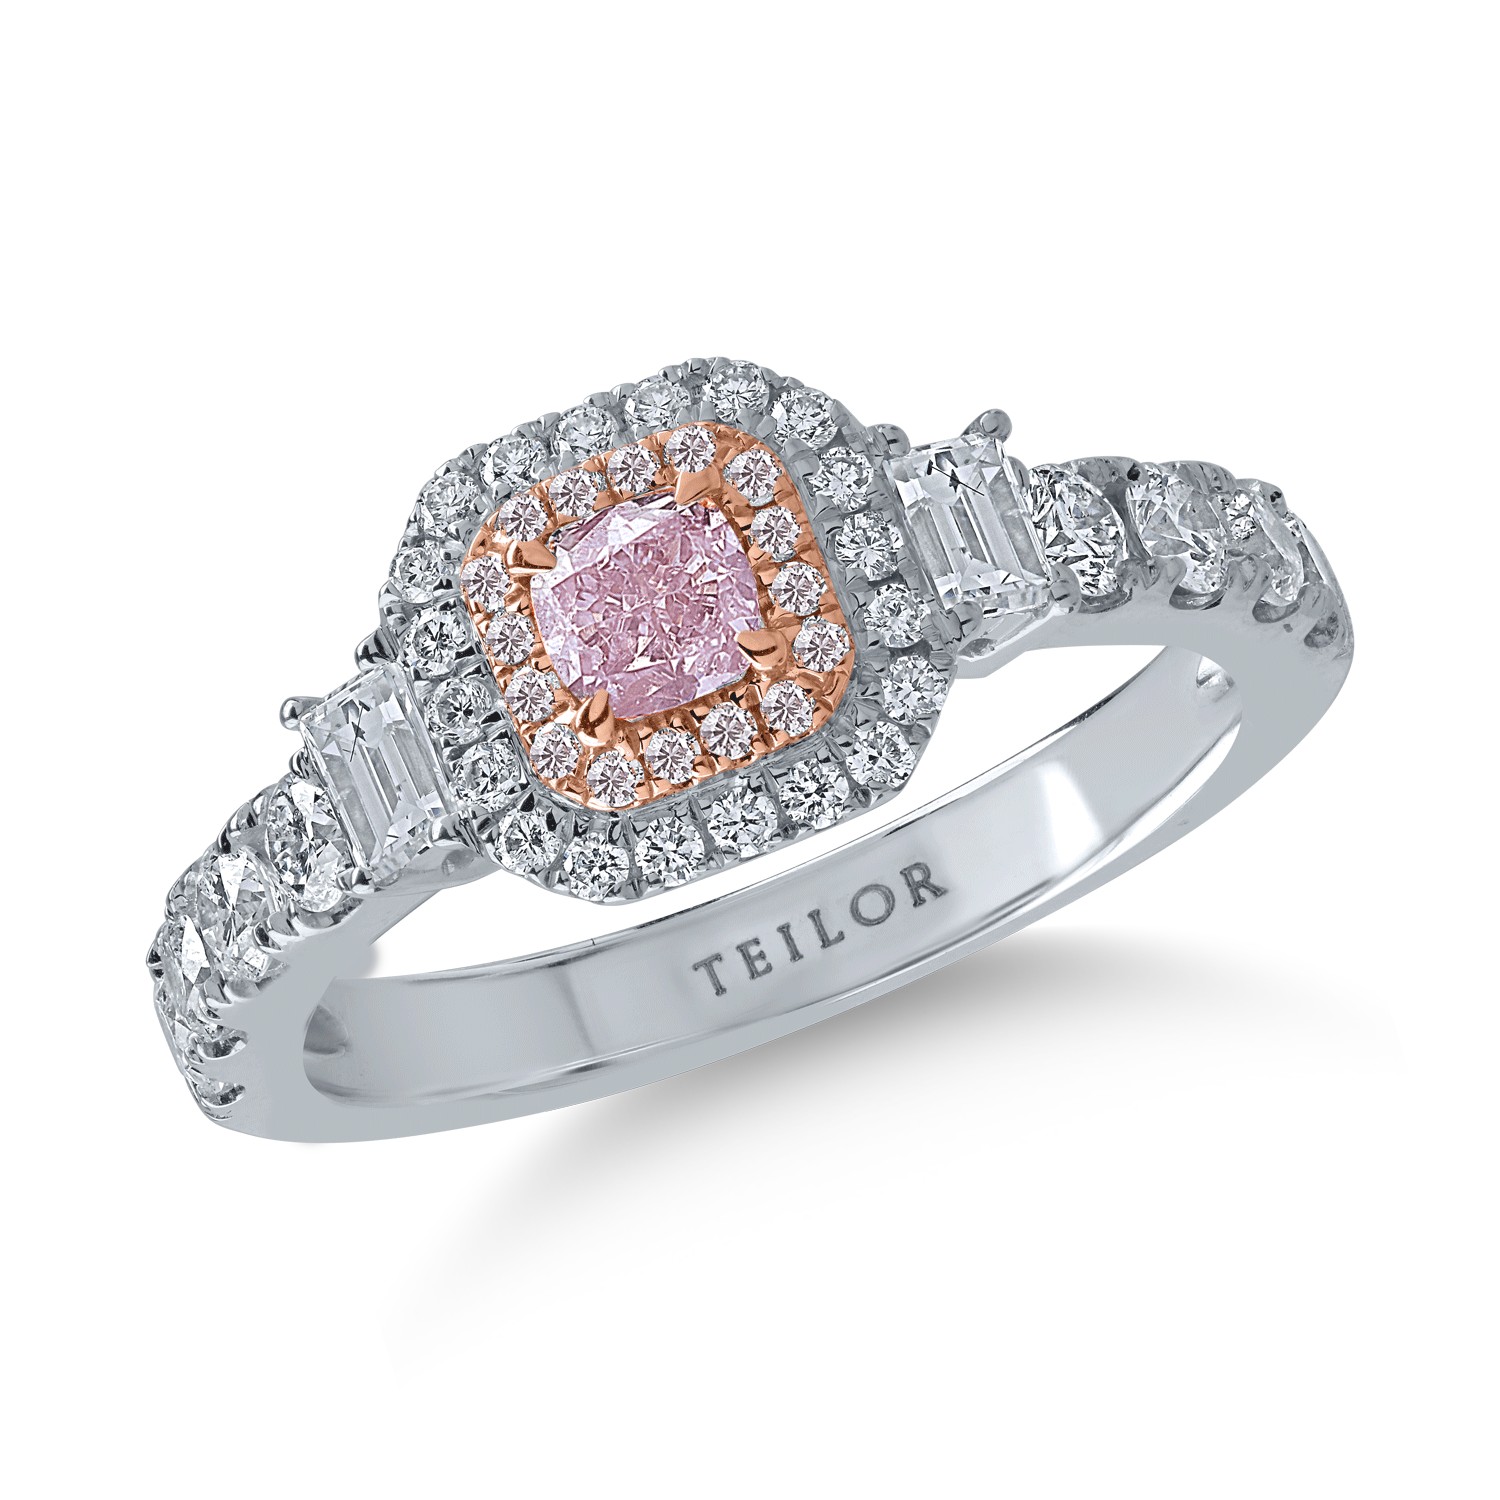 Pierścionek z białego i różowego złota z różowymi diamentami o masie 0.35ct i przezroczystymi diamentami o masie 0.81ct